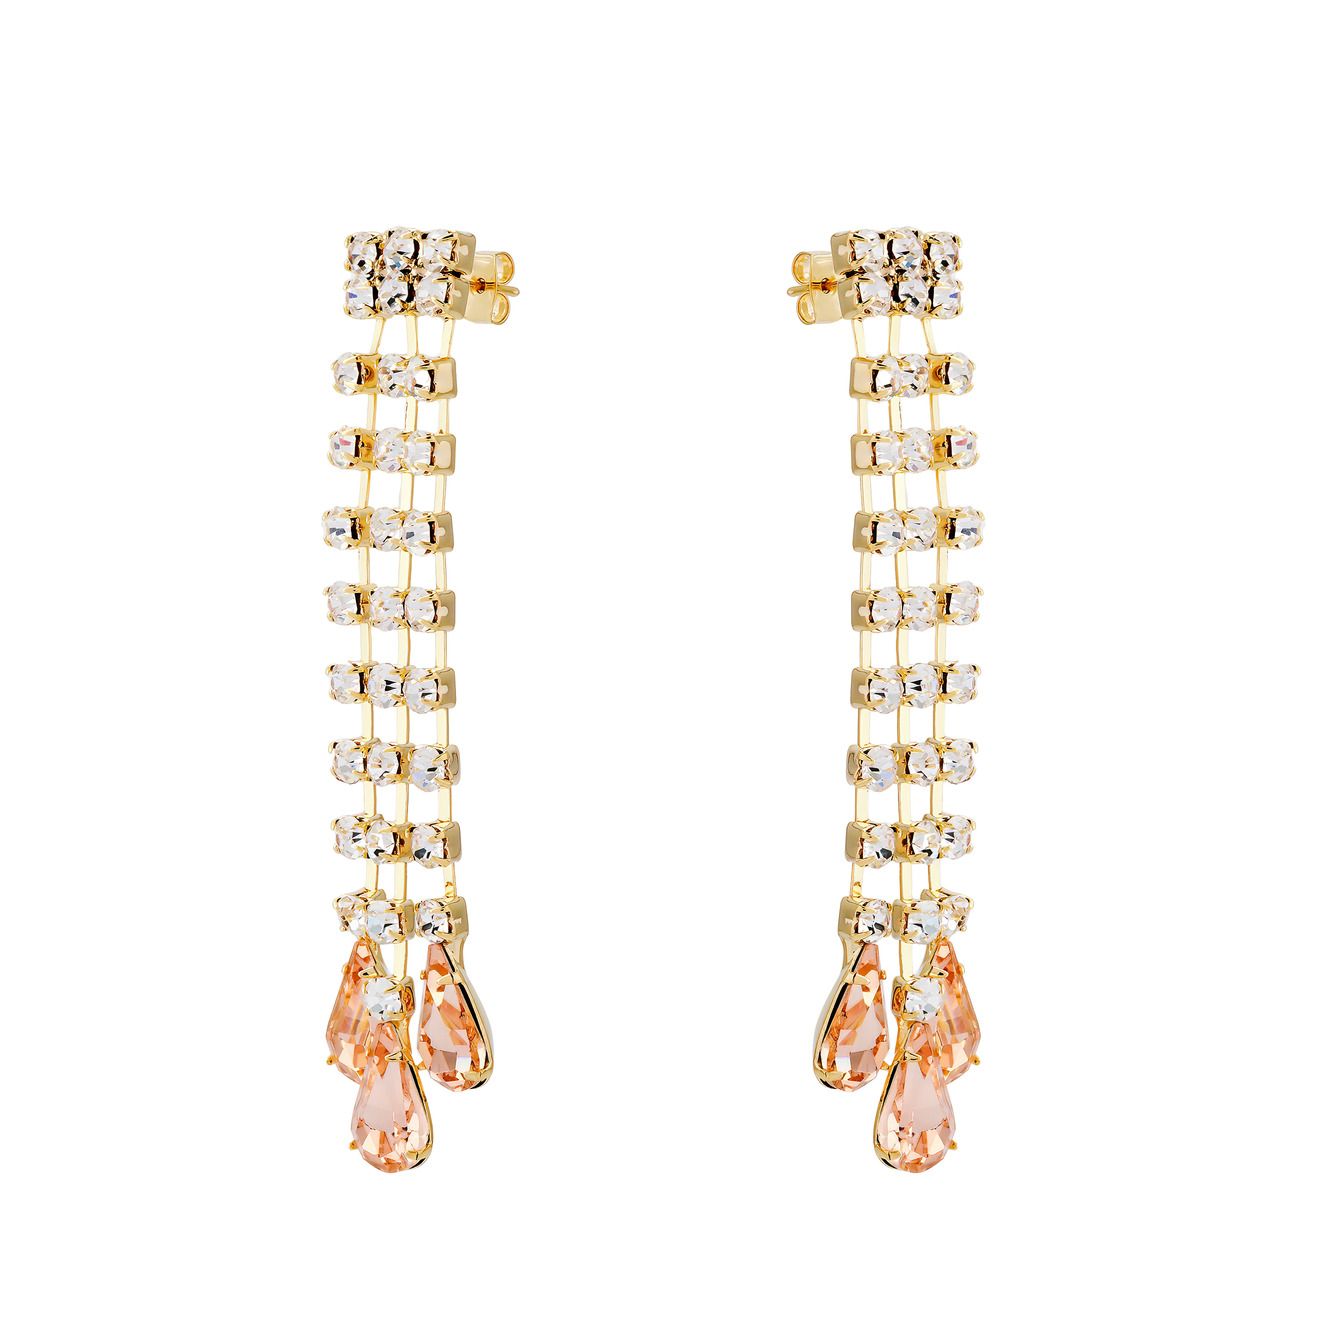 Herald Percy Золотистые серьги-дождики с дорожками из кристаллов и розовыми каплями lisa smith золотистые серьги из четырех кристаллов